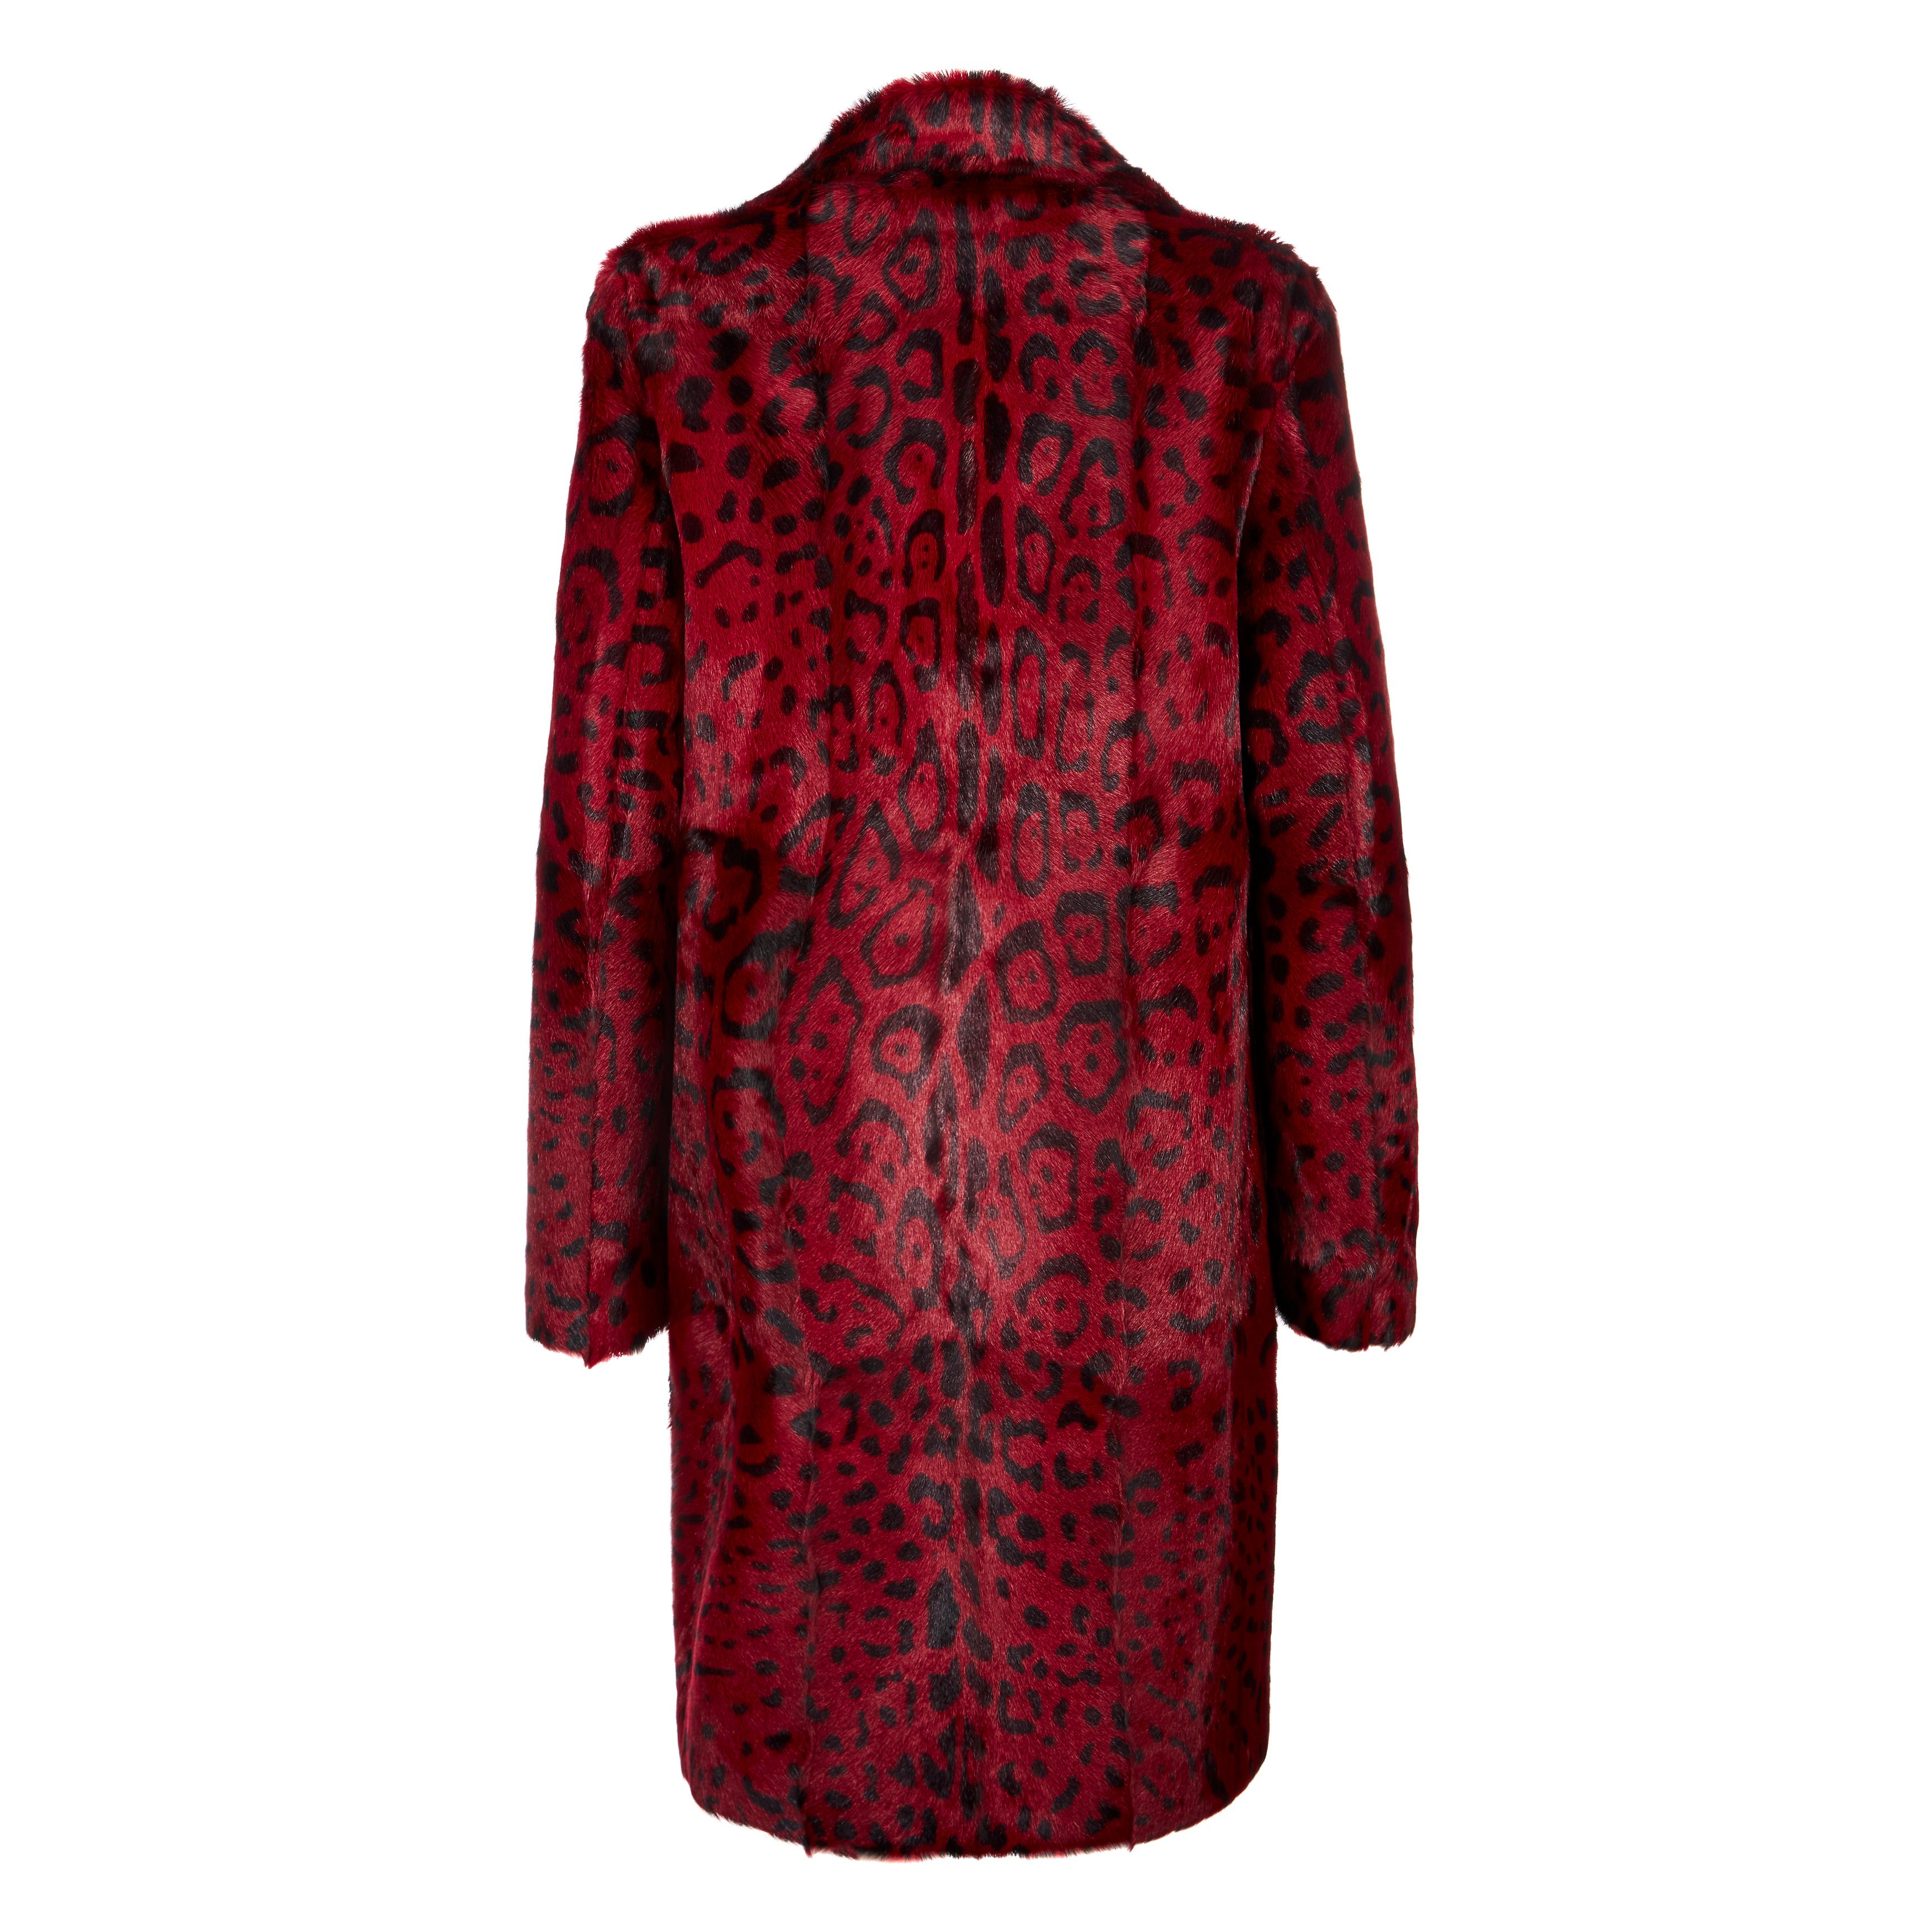 Women's Verheyen London Leopard Print Coat in Red Ruby Goat Hair Fur UK 10 For Sale